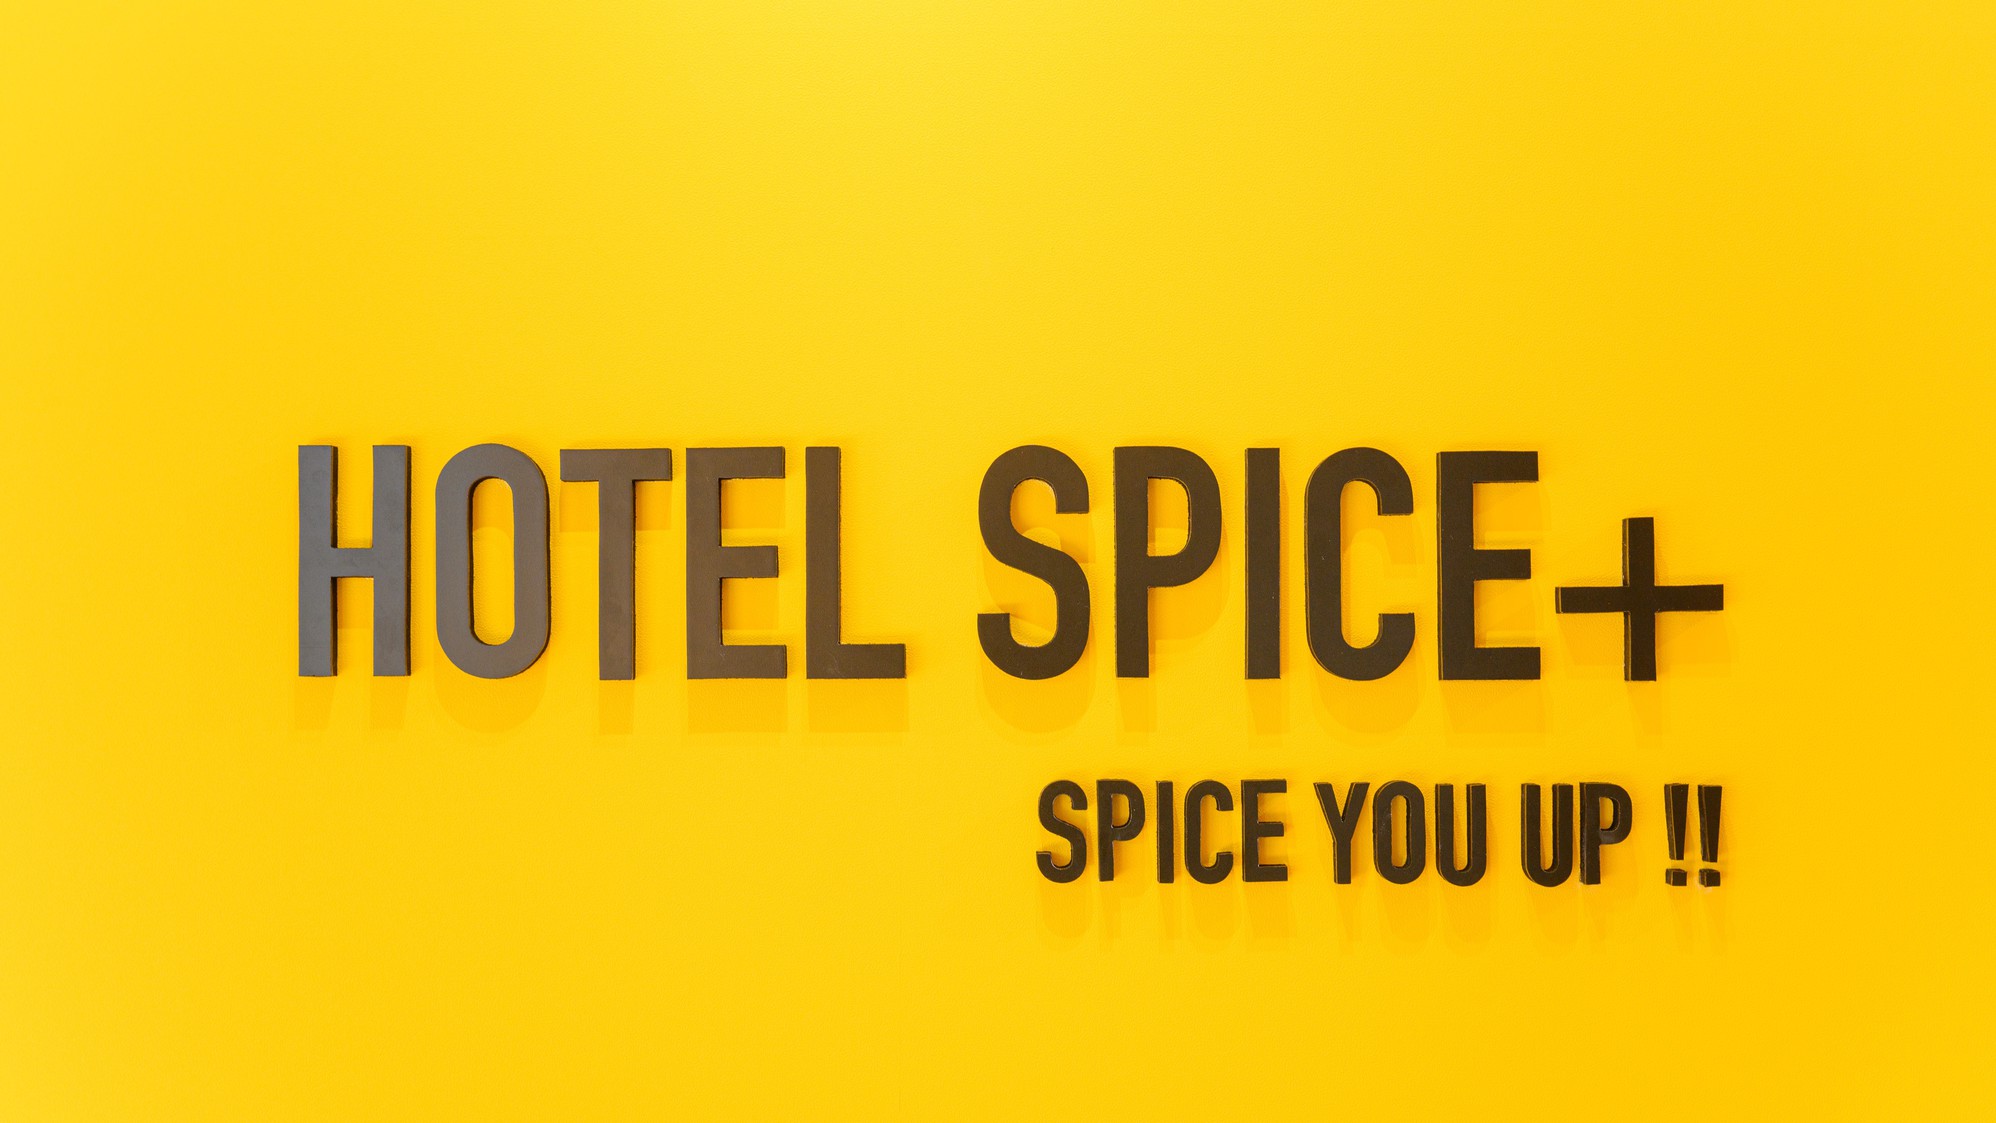 フロント／お客様の滞在と地域ならではの資源をSpiceとしてプラスするホテルです。